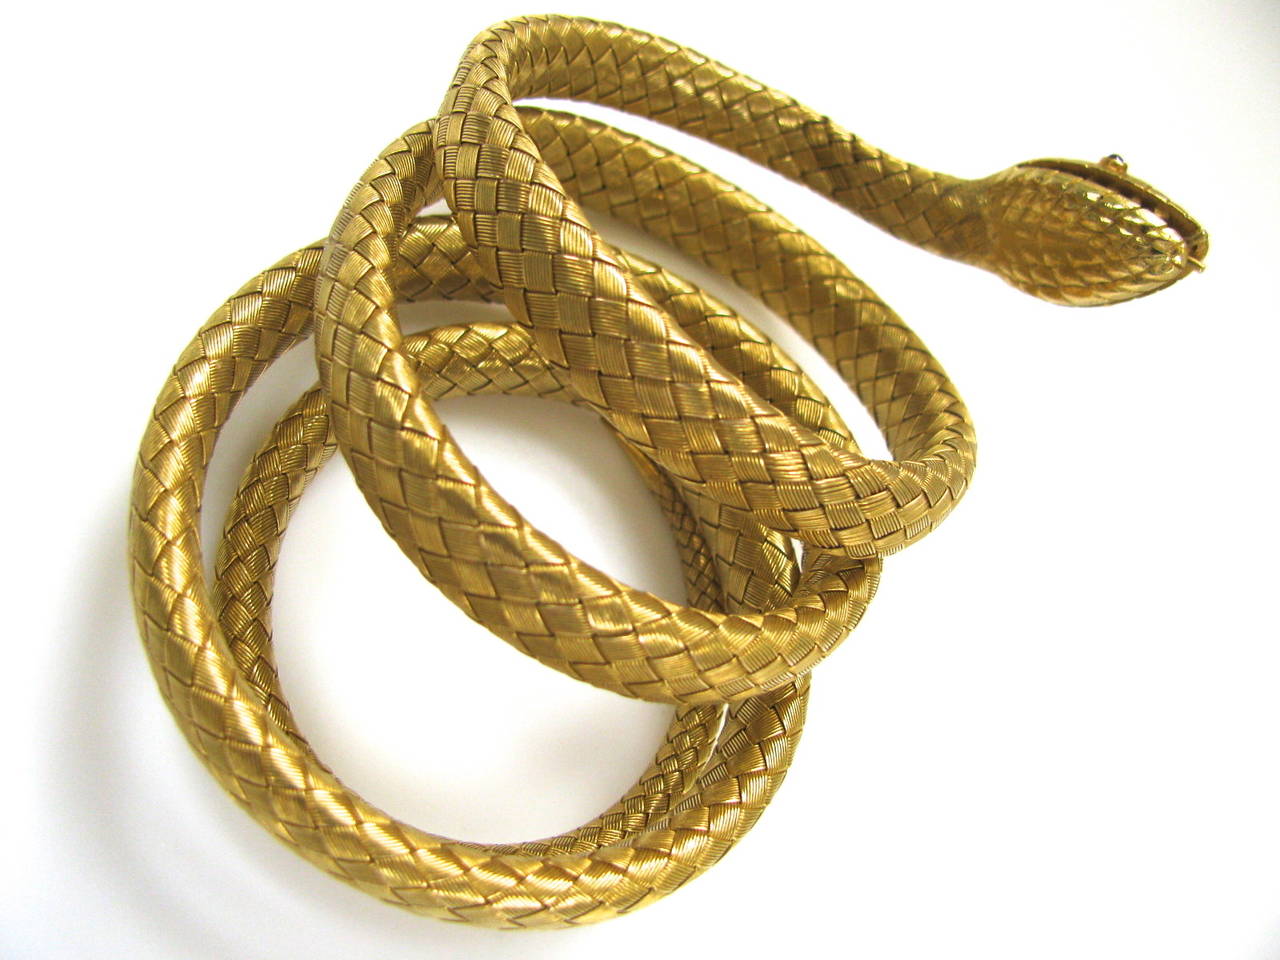 A stunning gold Victorian Serpent Bracelet. A 3/8 ( 2 1/4